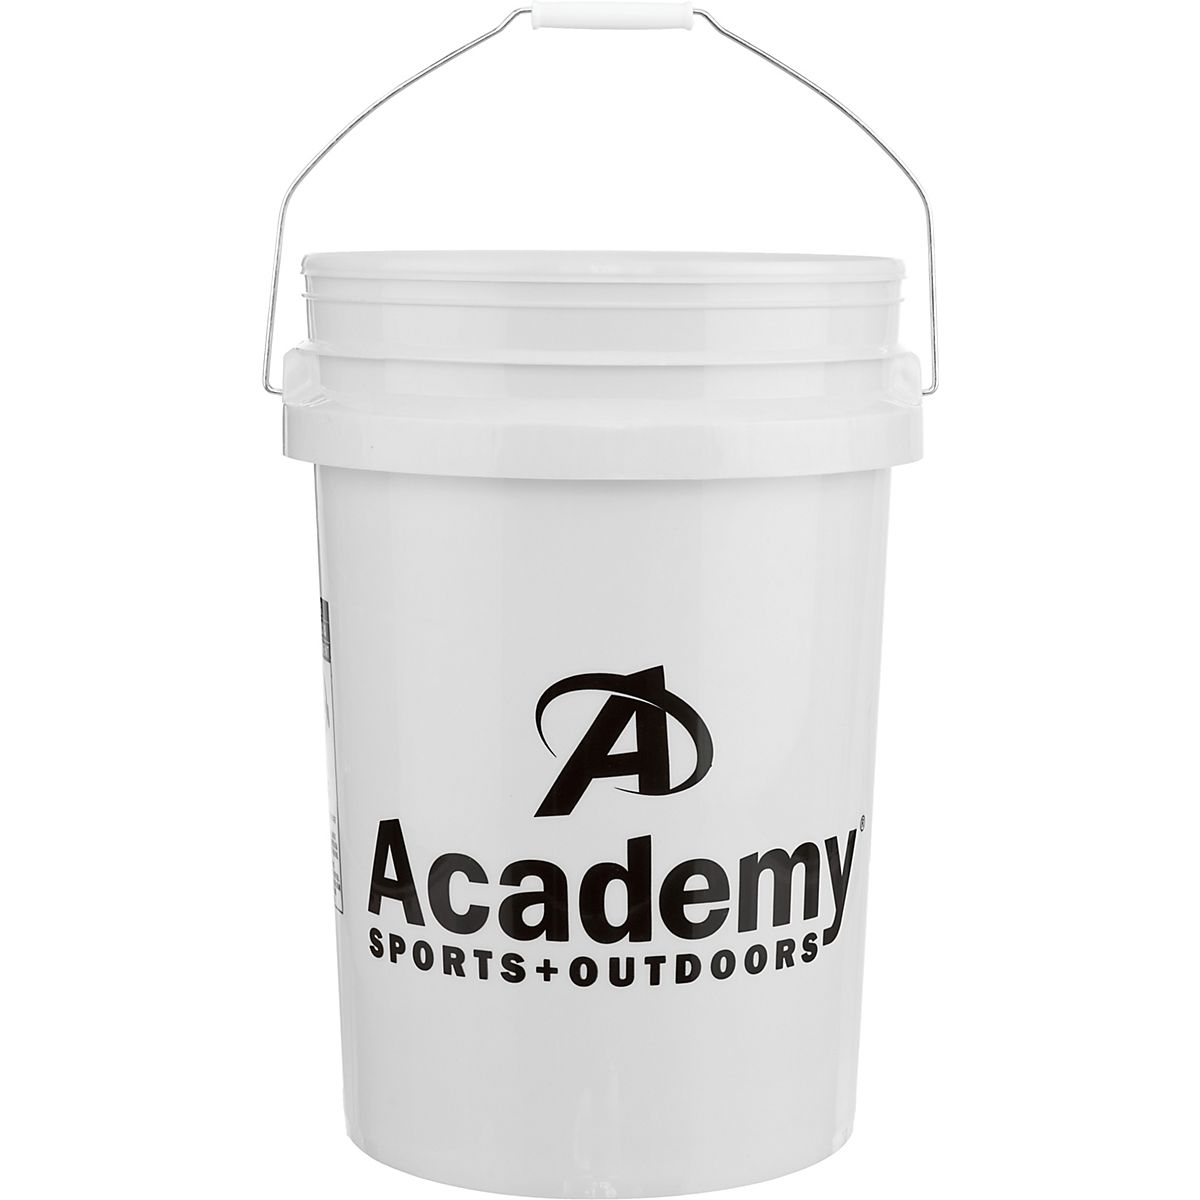 www.academy.com